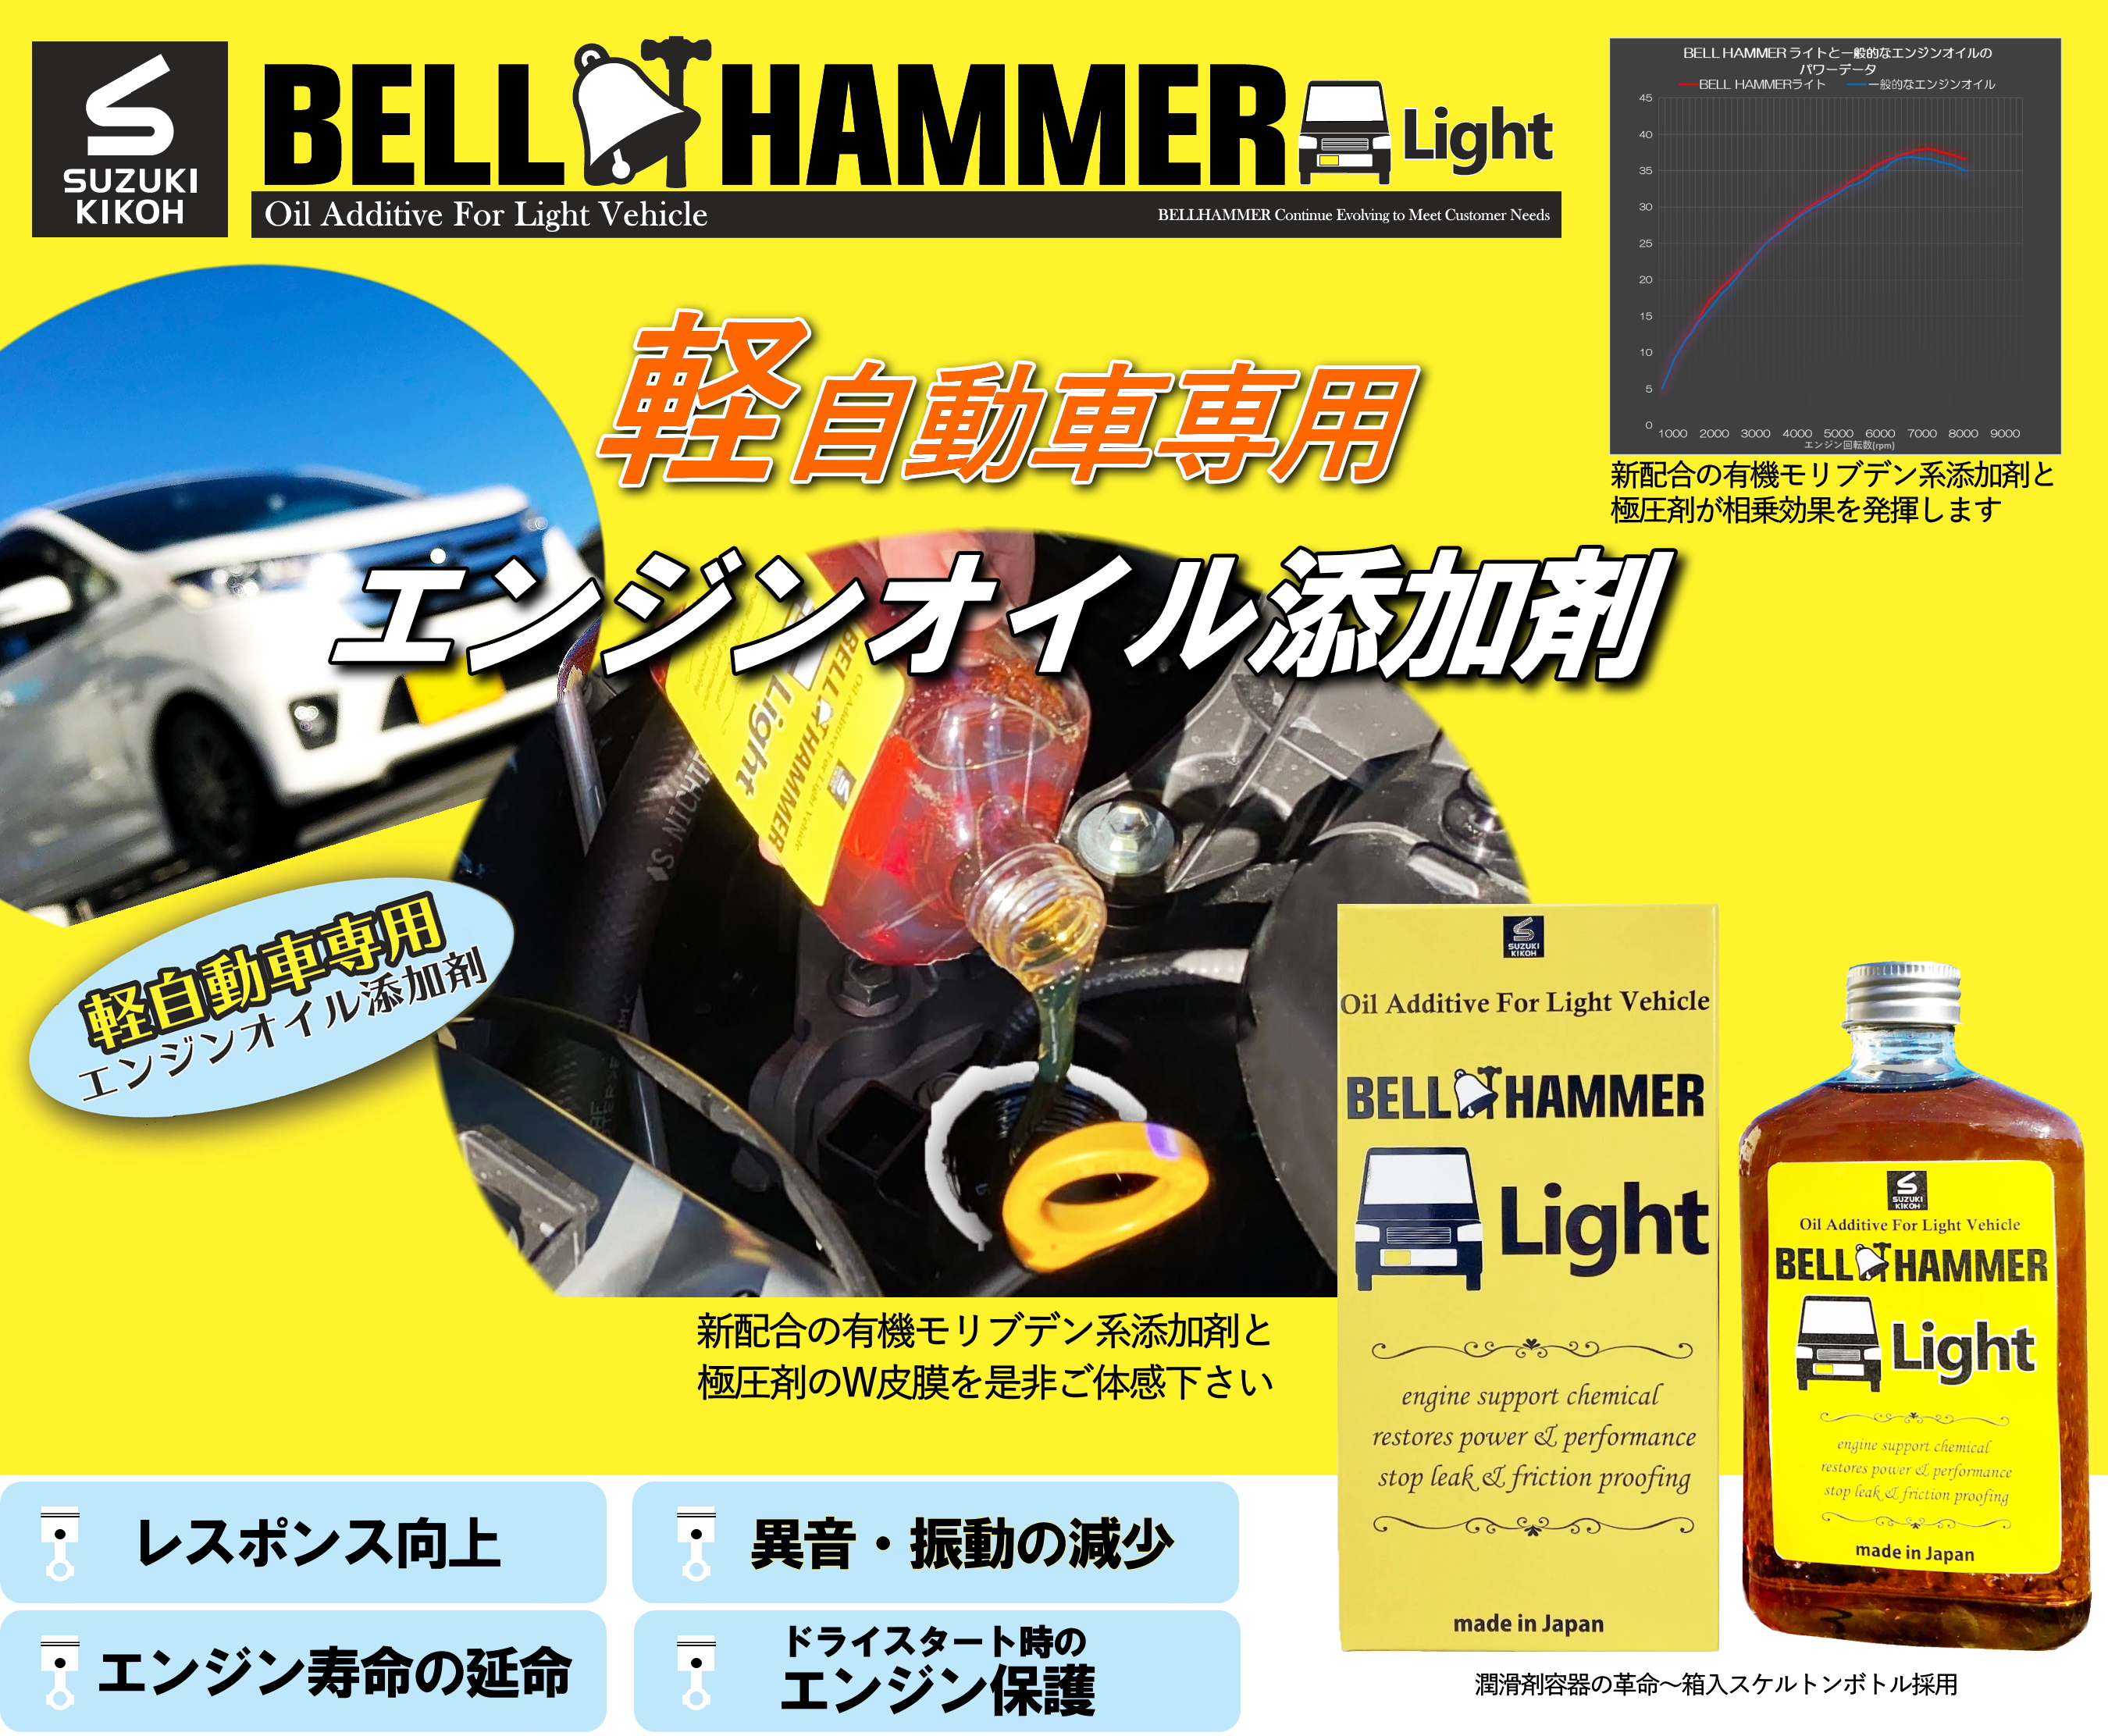 ベルハンマーライト - 軽自動車専用エンジンオイル添加剤